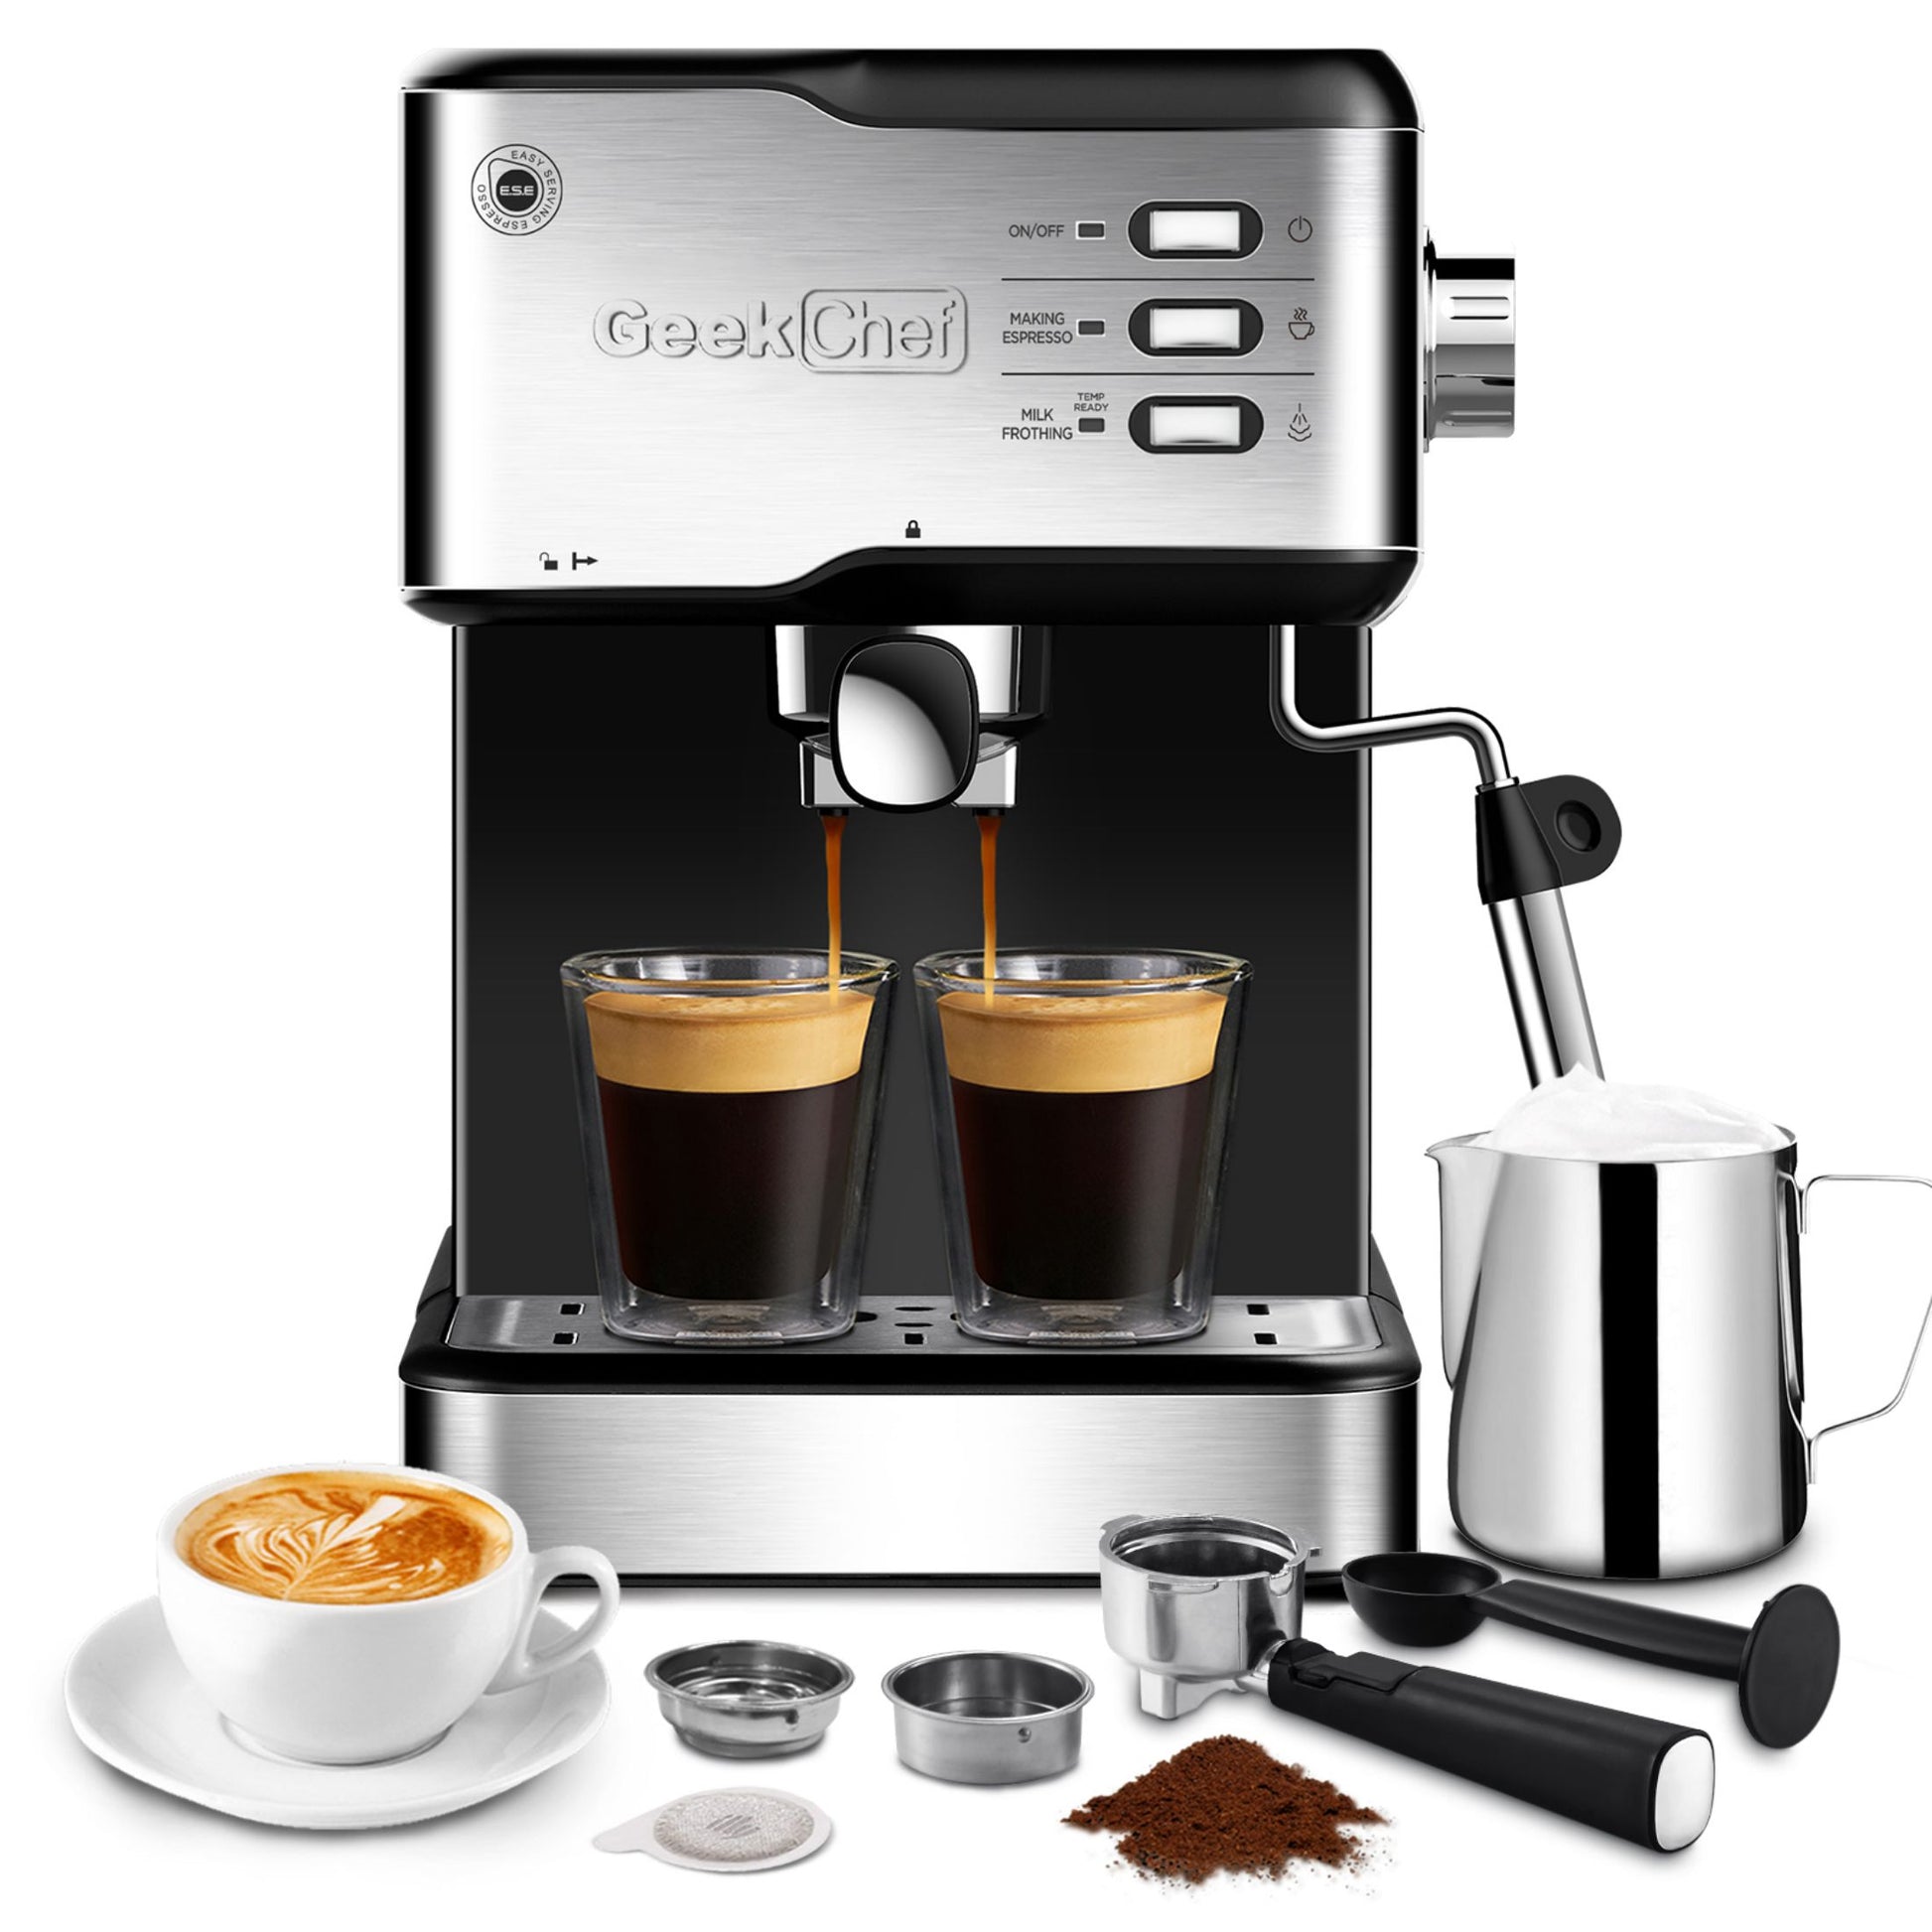 Eco gadgets: cafetera espresso manual - VeoVerde